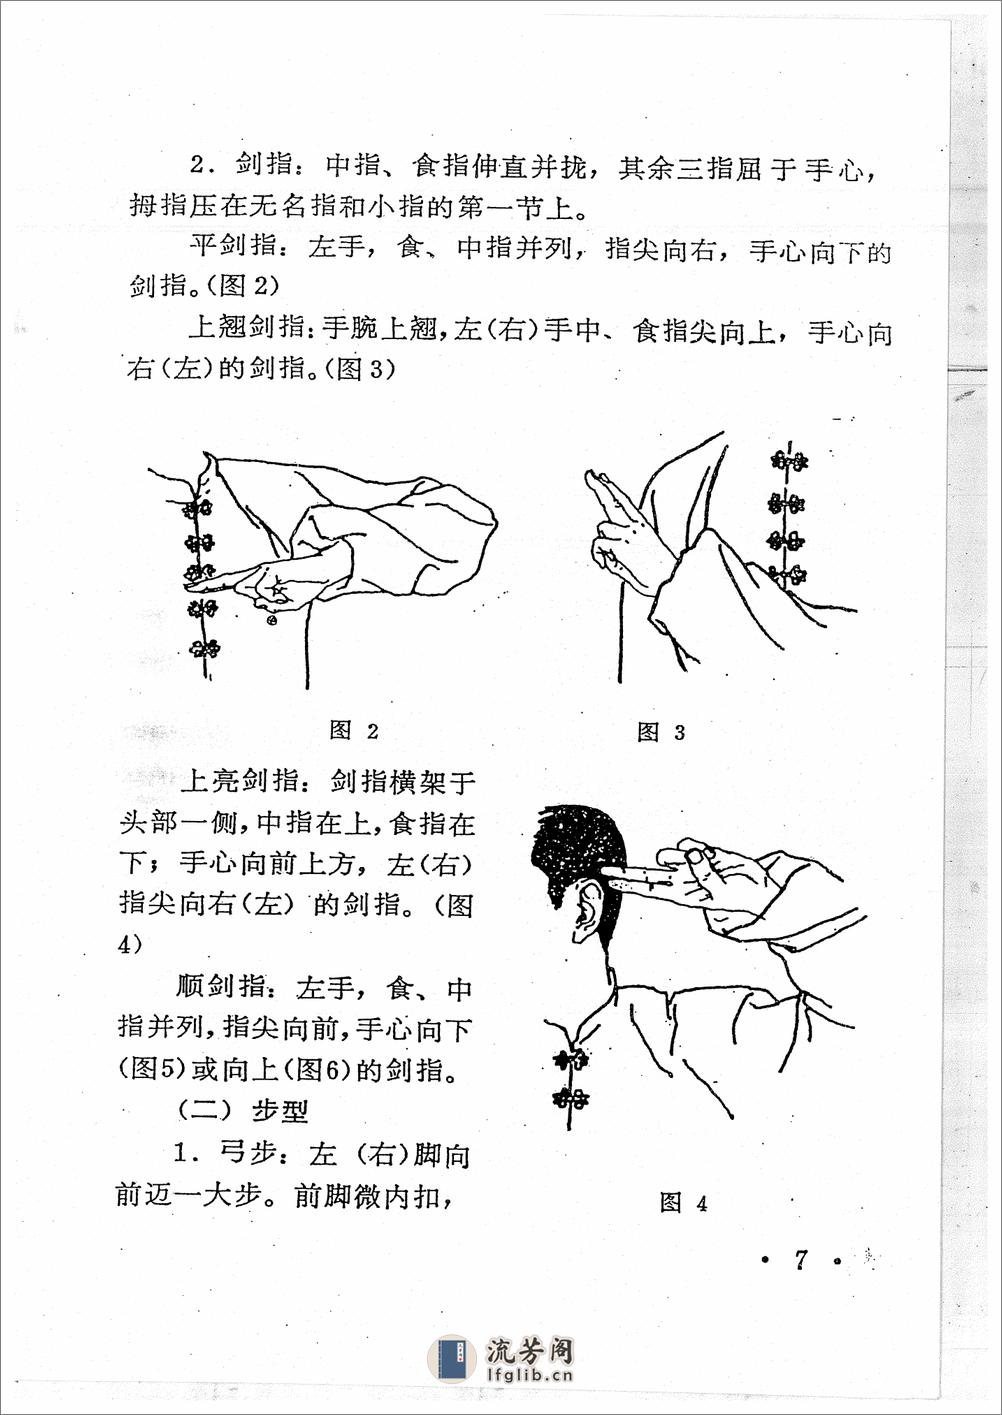 《青萍剑》贾勃生、刘滋茂 - 第9页预览图